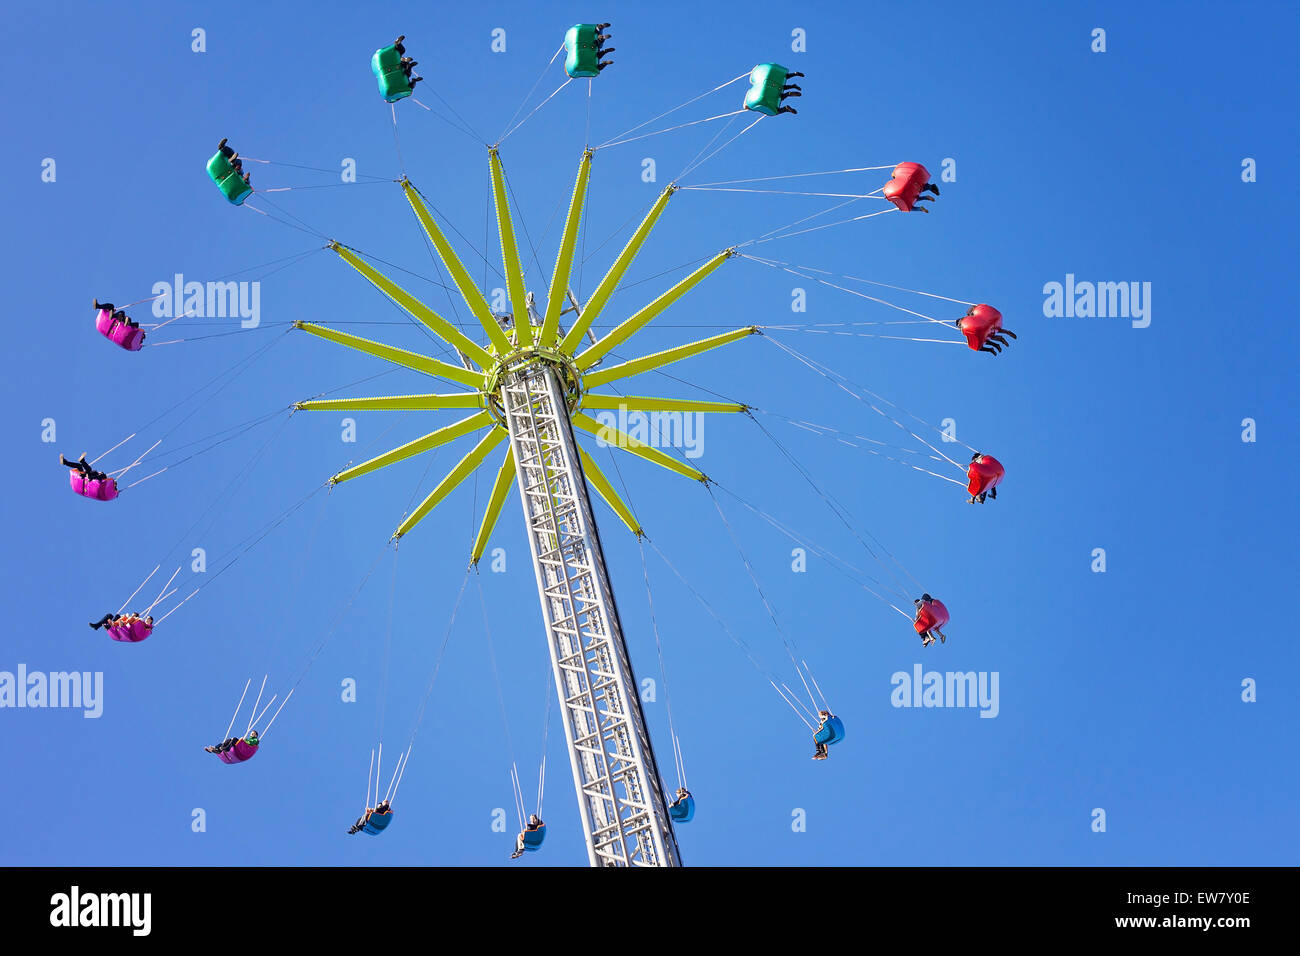 Manège, carrousel de rotation de la chaîne ride in amusement park ...